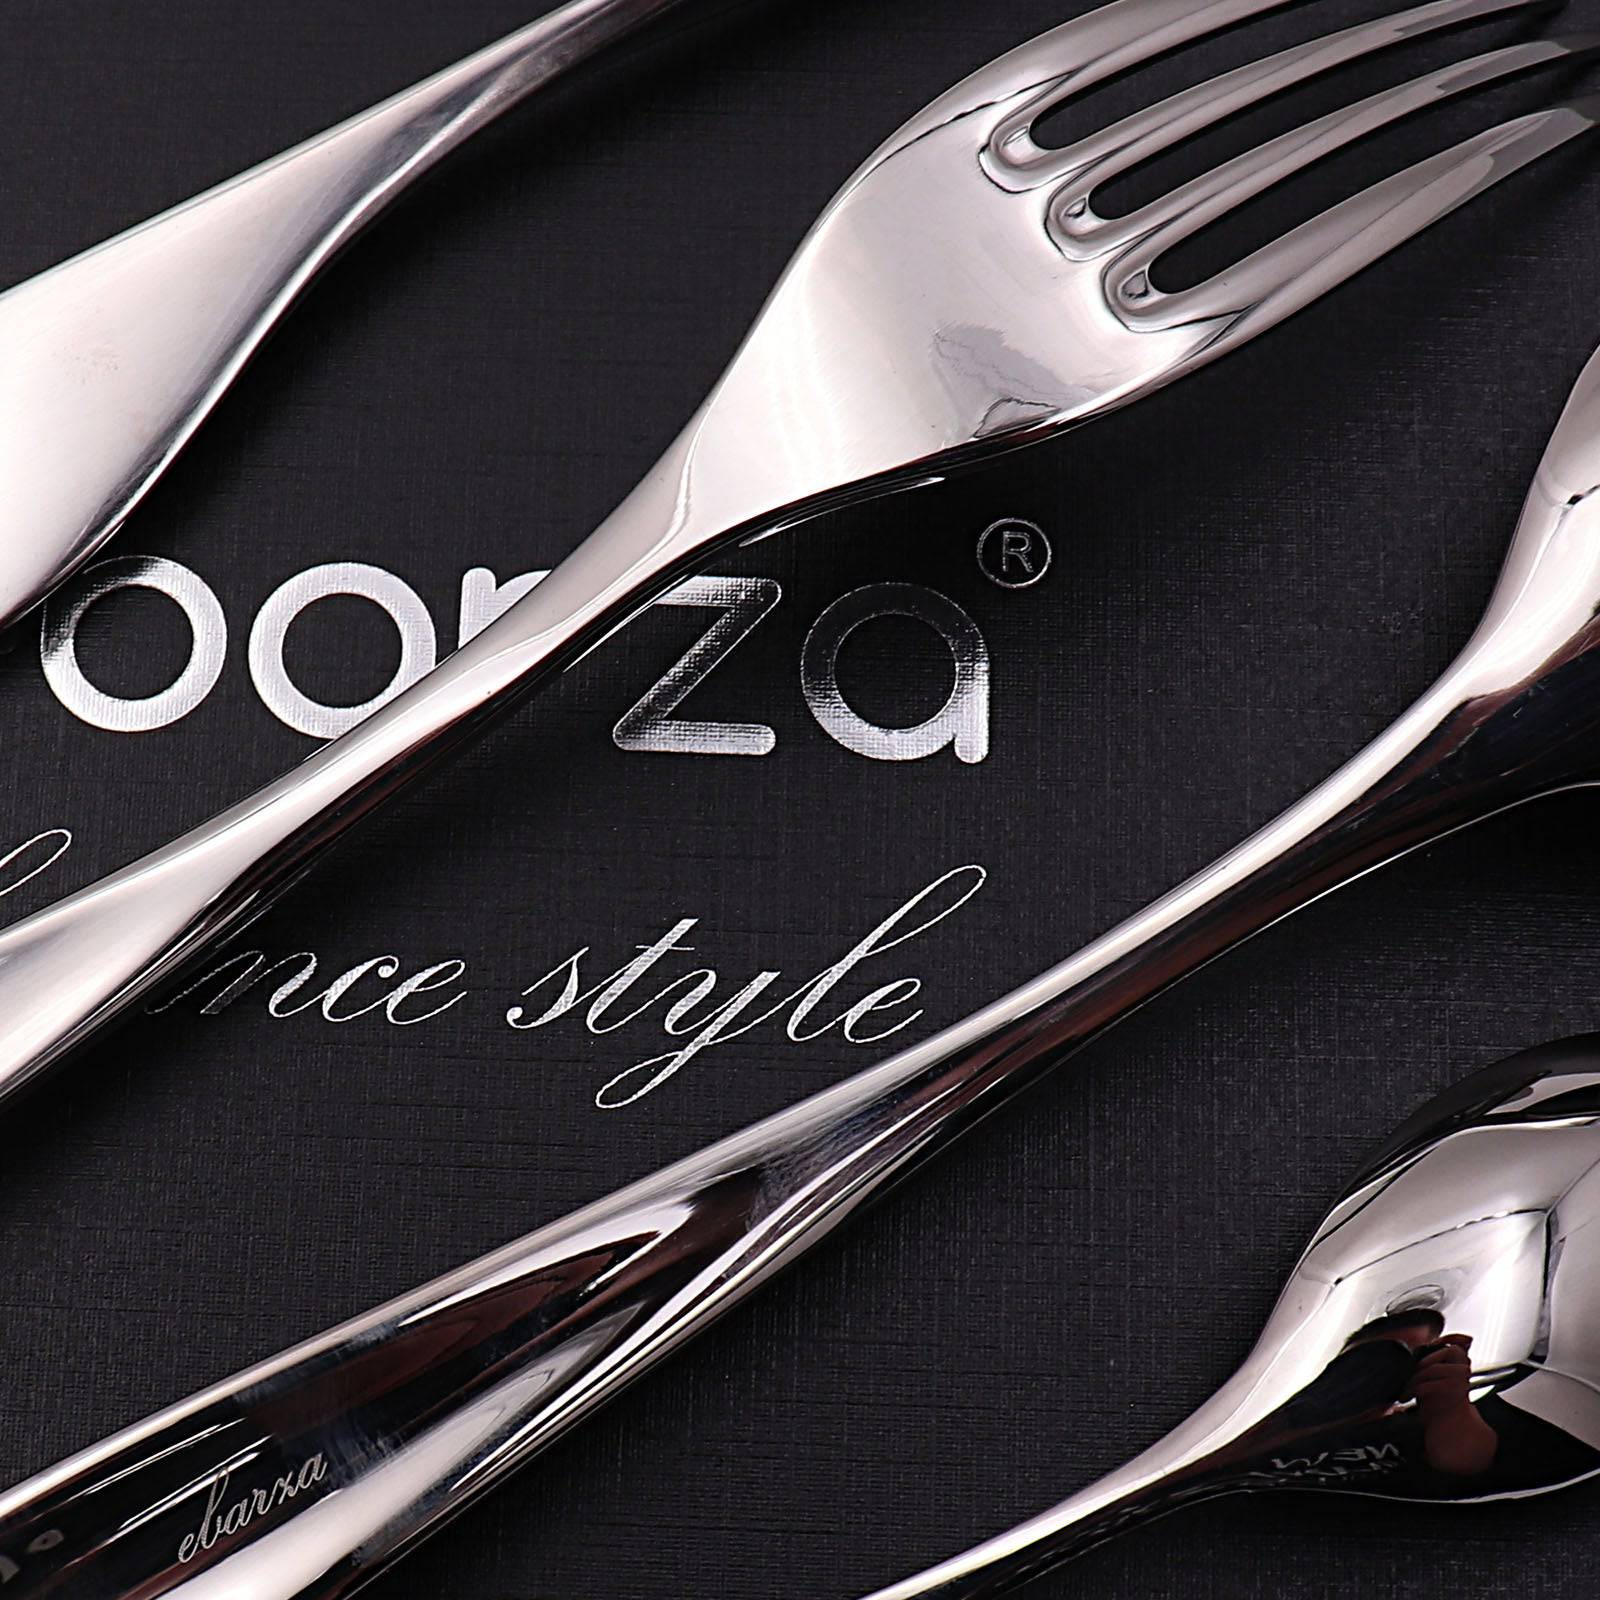 Set Of 24 Pieces Lyon Cutlery Set 8091 -  Cutlery Sets | طقم أدوات مائدة ليون 24 قطعة - ebarza Furniture UAE | Shop Modern Furniture in Abu Dhabi & Dubai - مفروشات ايبازرا في الامارات | تسوق اثاث عصري وديكورات مميزة في دبي وابوظبي